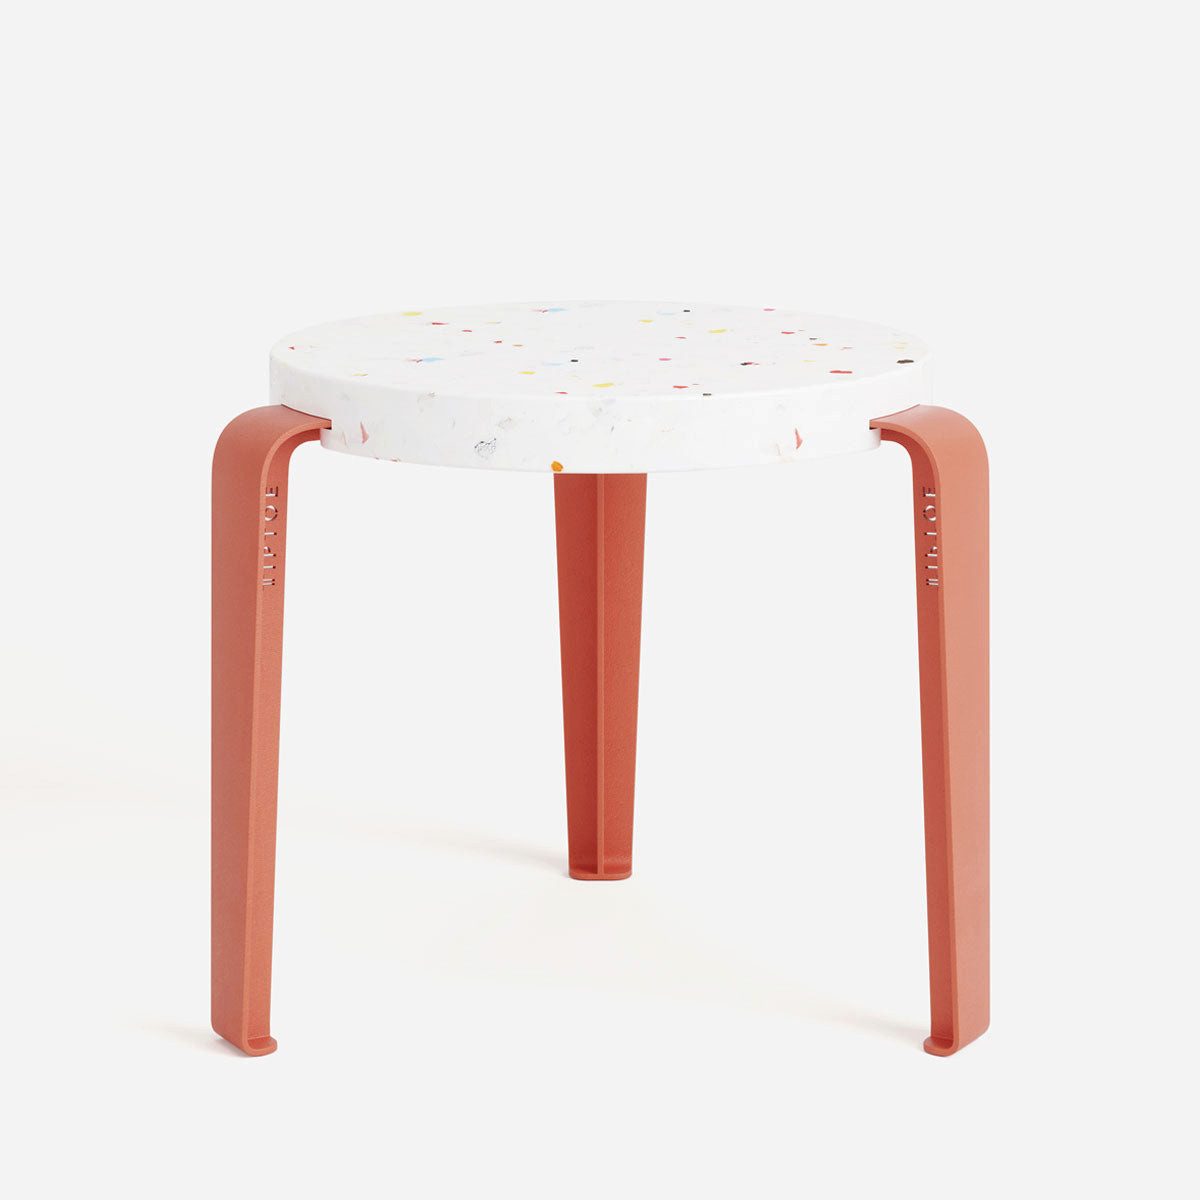 TIPTOE Sitzhocker MINI LOU kids stool – recycled plastic Tutti Frutti, für Kinderzimmer, bunter Look